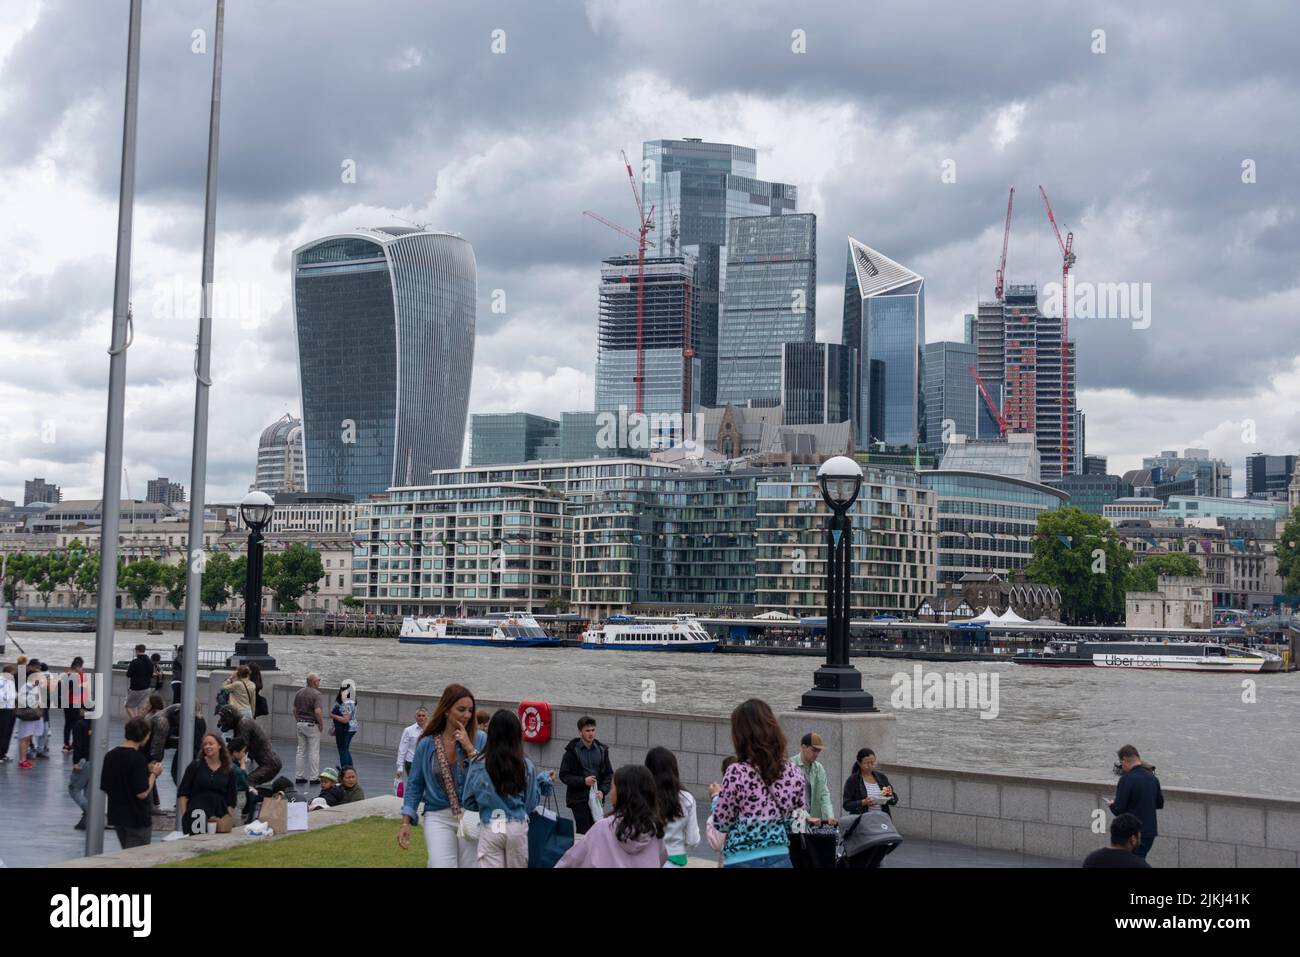 Wolkenkratzer, einschließlich Walkie Talkie Wolkenkratzer, City of London, Finanzviertel, Finanzmetropole, London, Vereinigtes Königreich Stockfoto